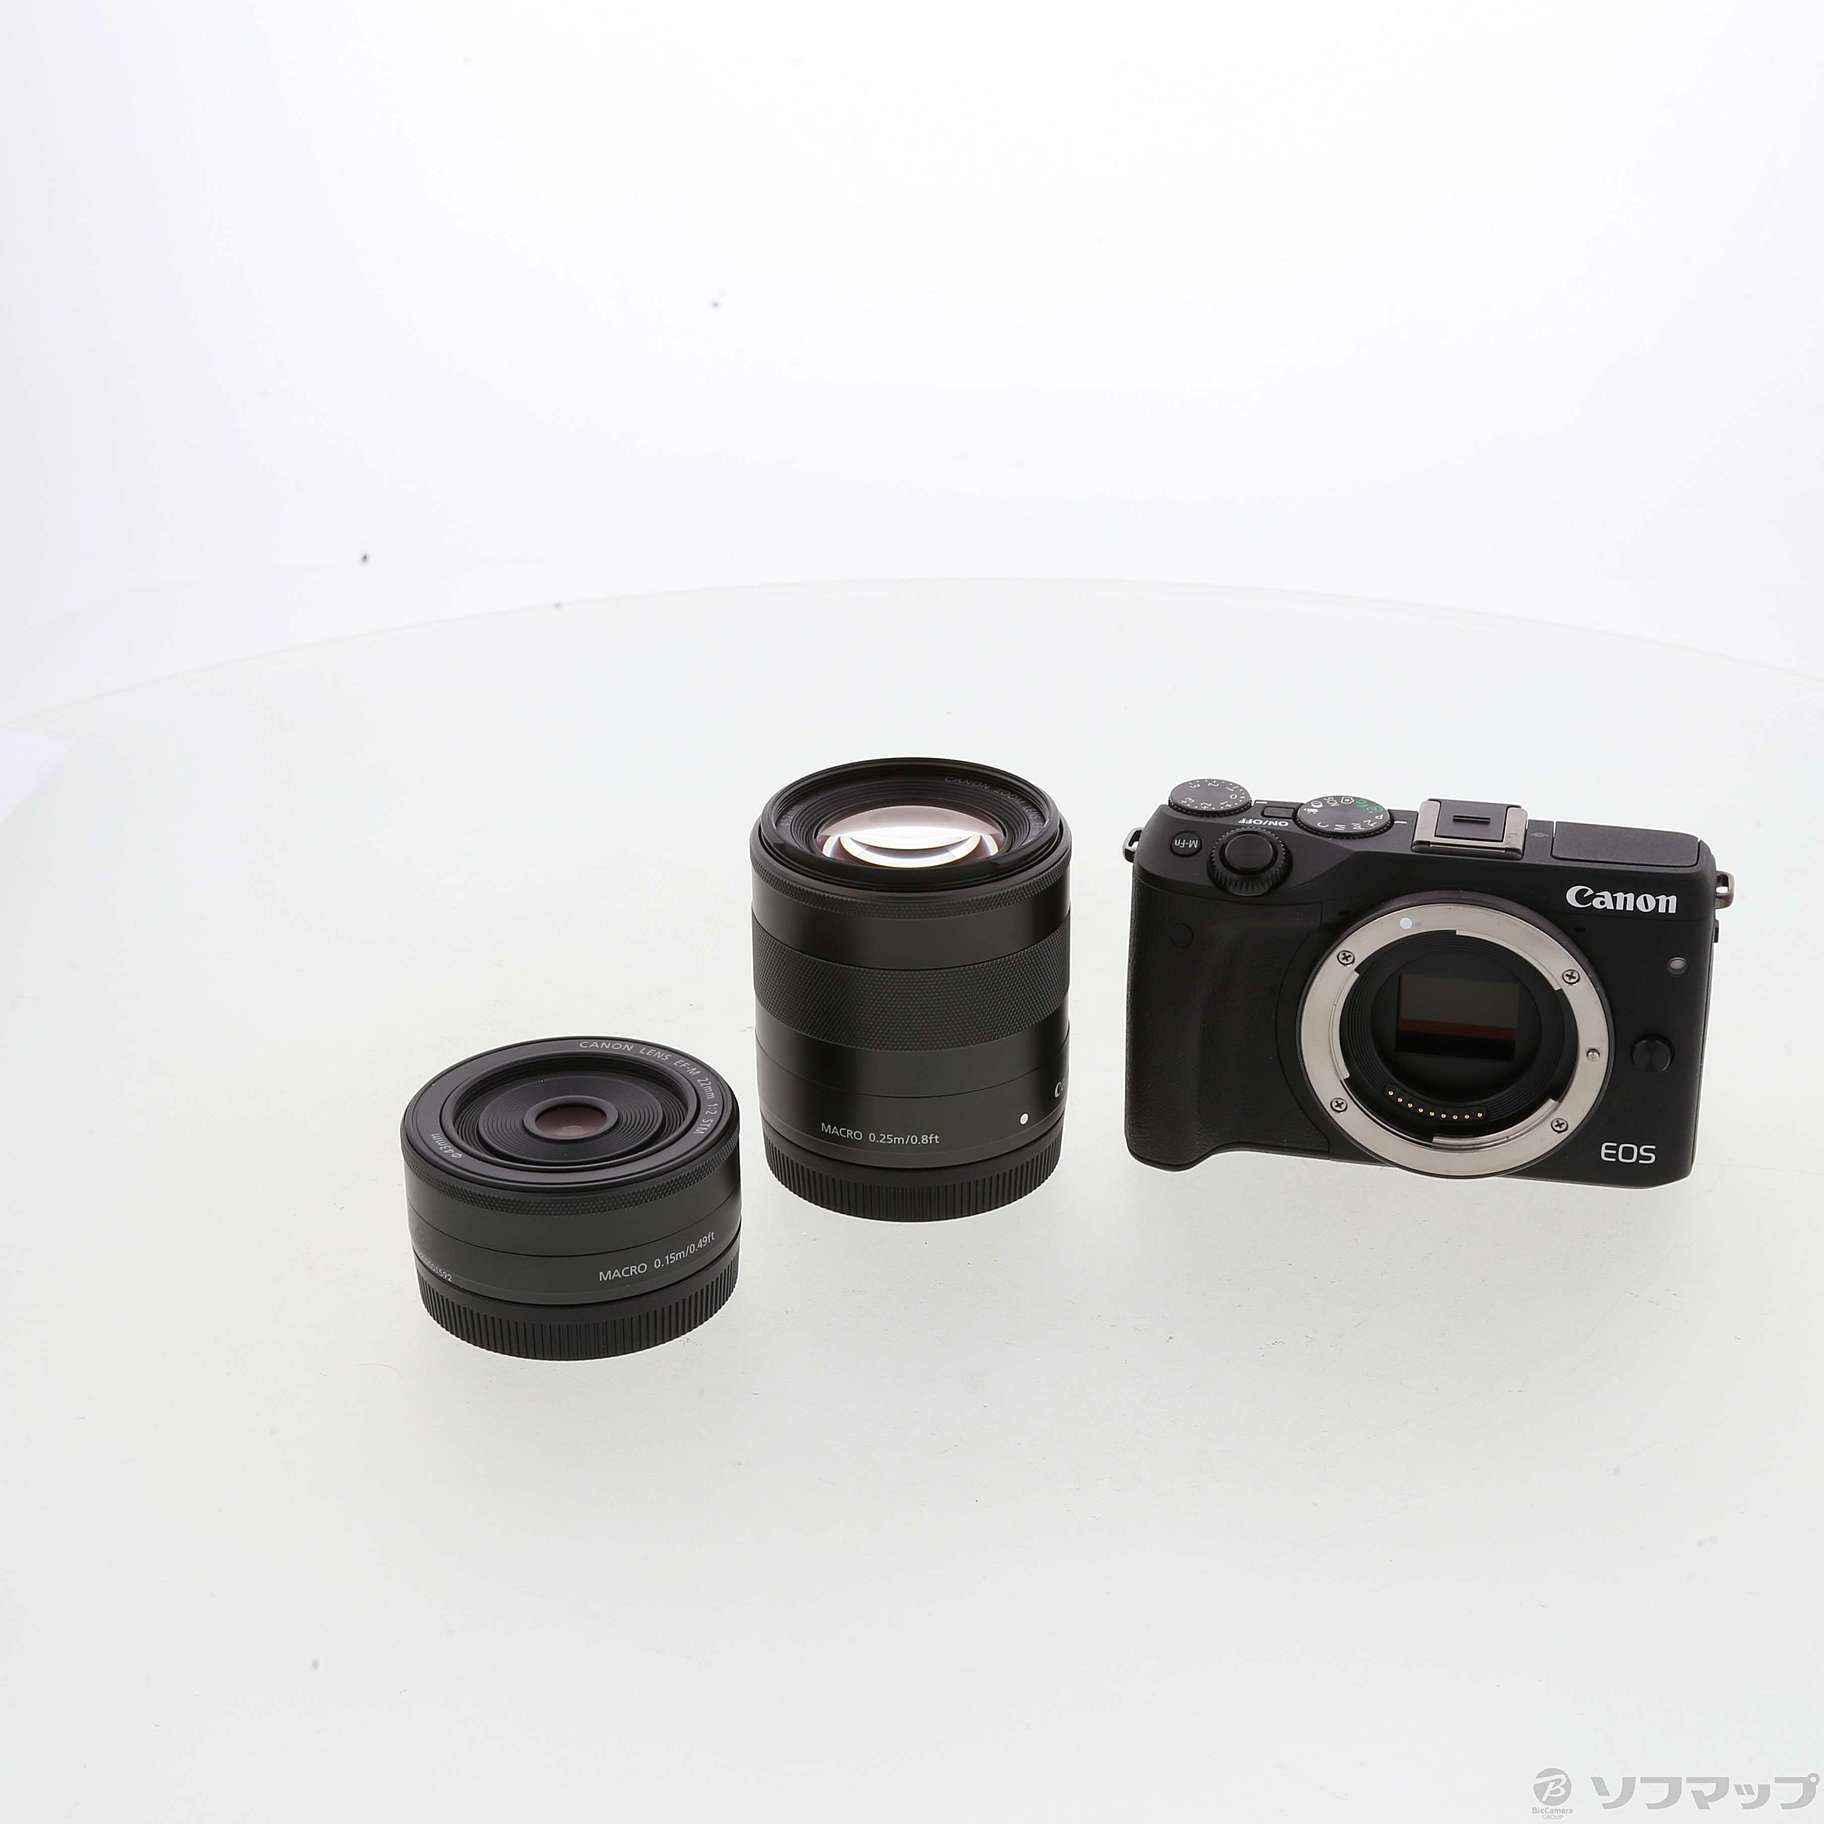 Canon EOS M3 WレンズキットBK